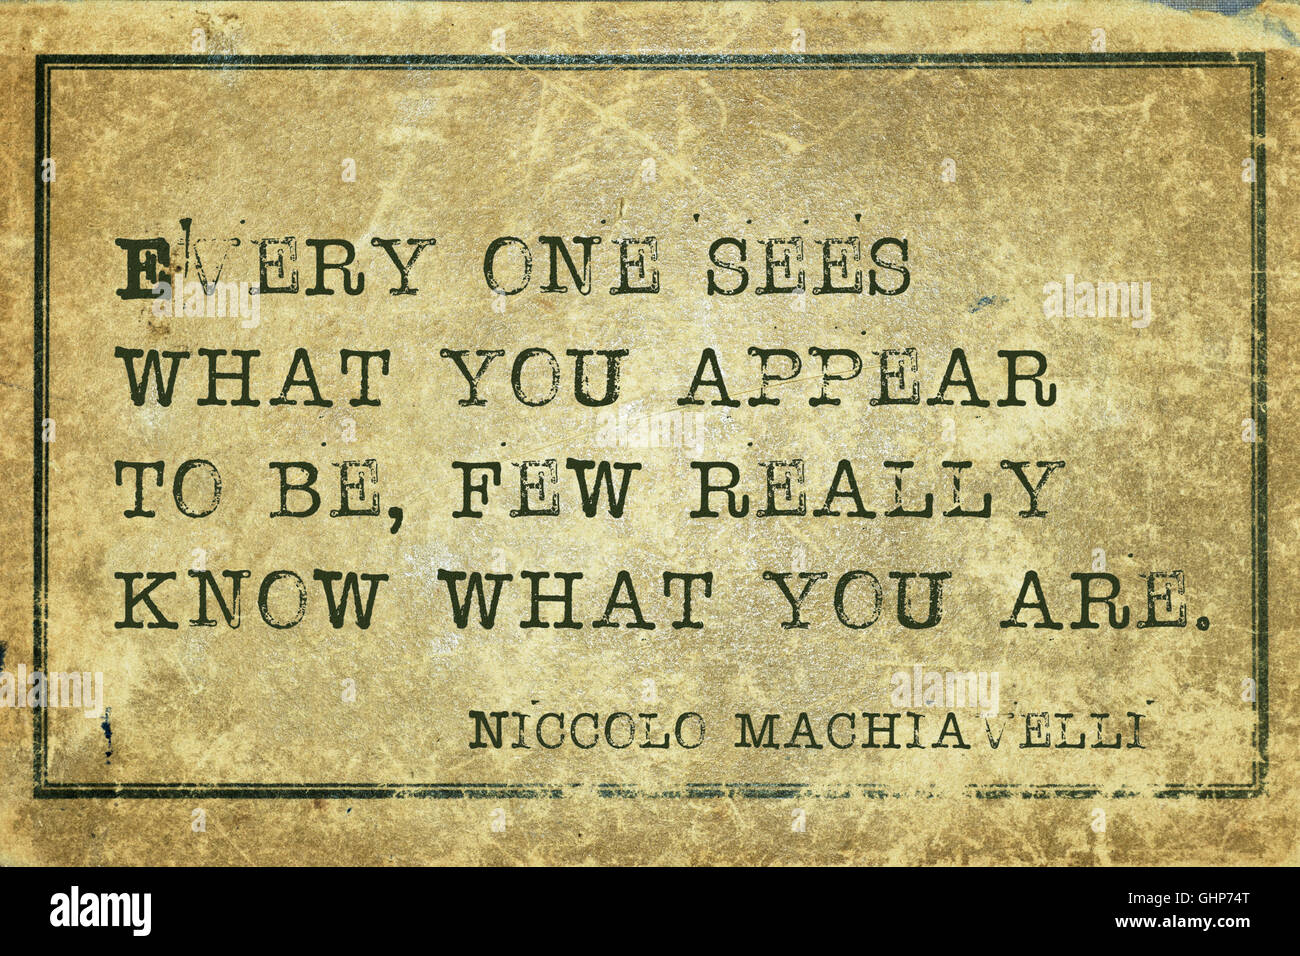 Chacun voit ce que vous paraissez - ancien philosophe italien Niccolo Machiavelli citer imprimé sur carton vintage grunge Banque D'Images